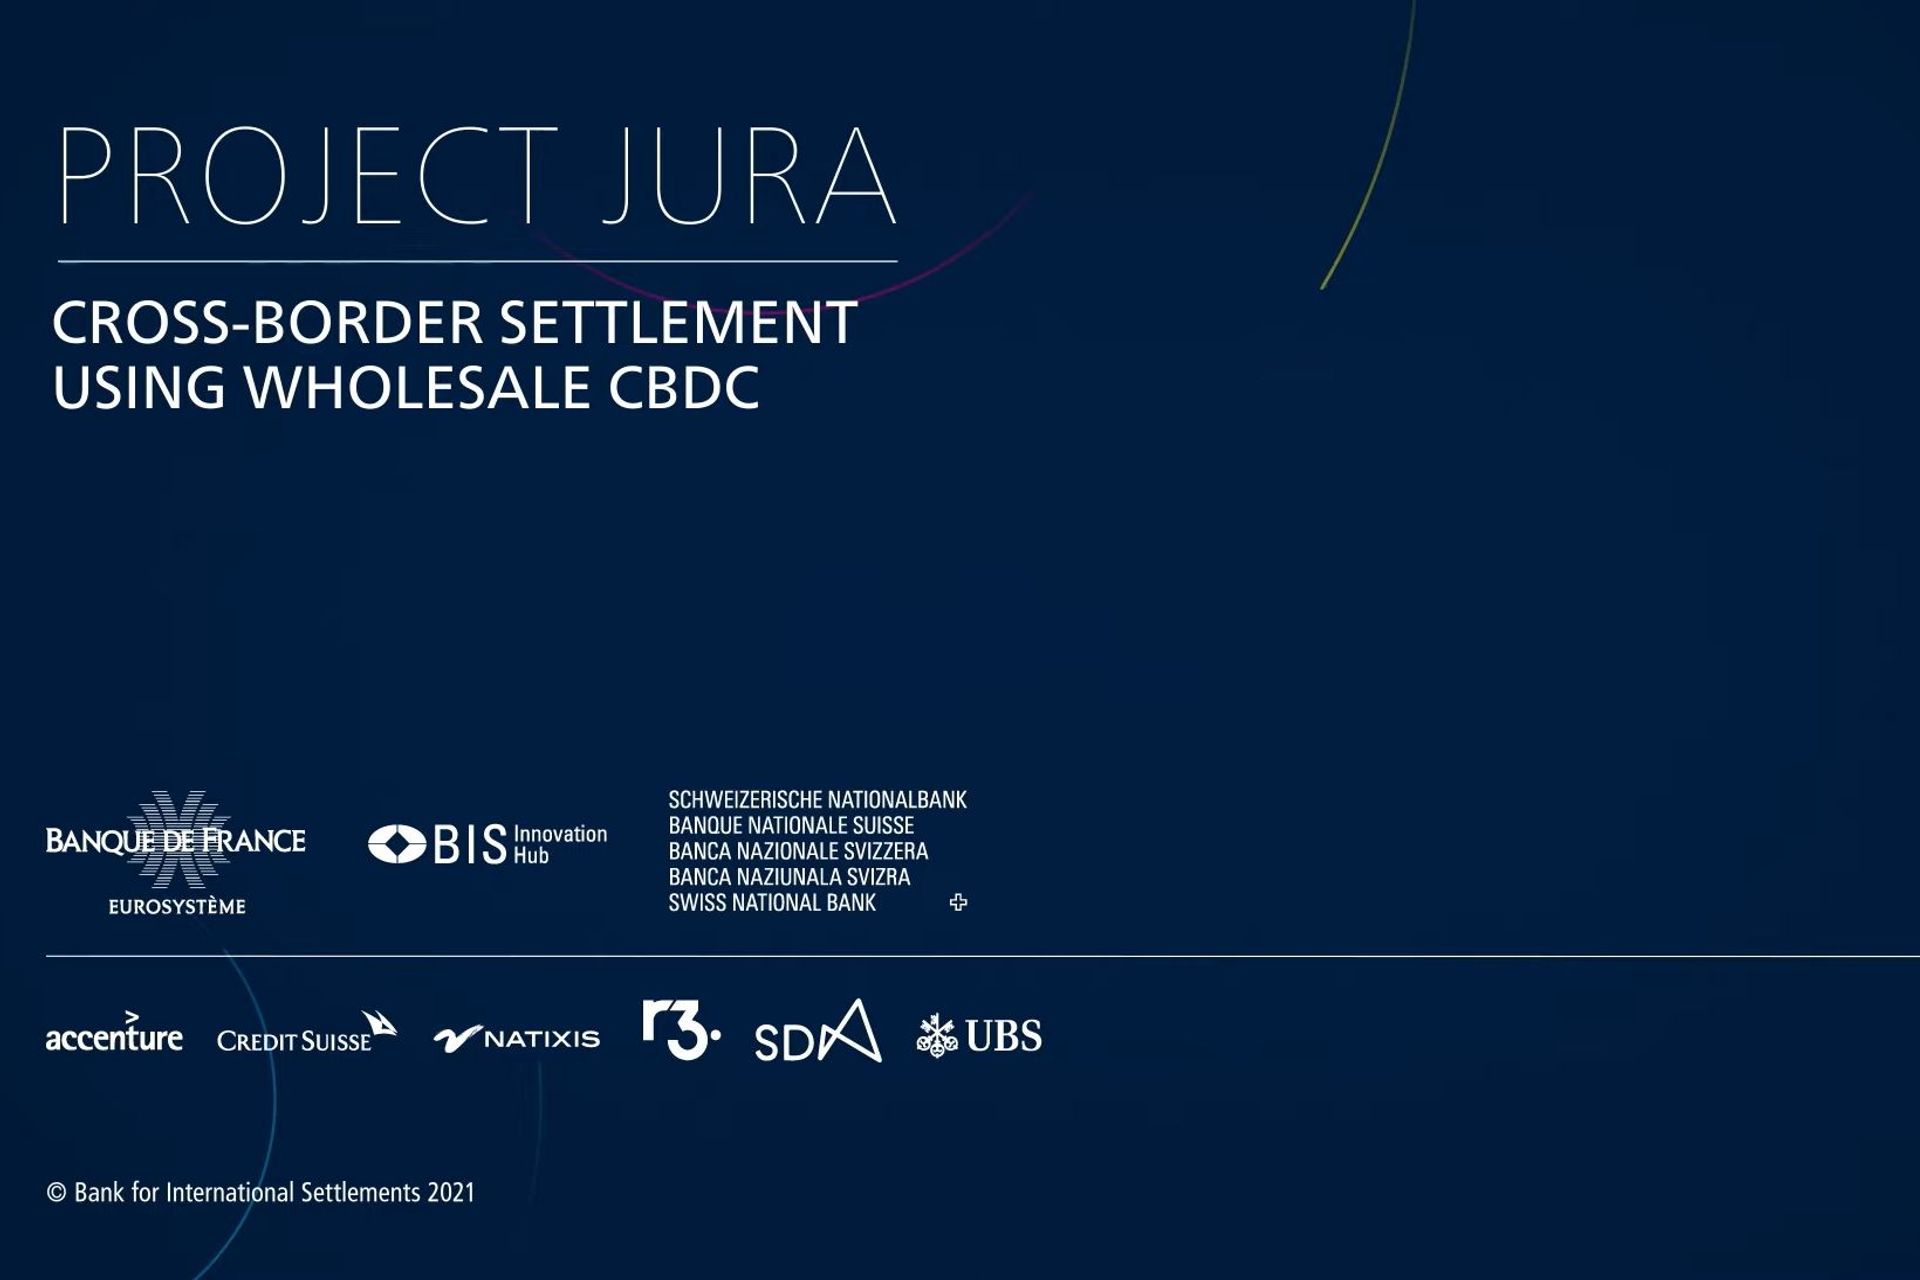 Le aziende partner, la descrizione e il logotipo del "Progetto Jura"